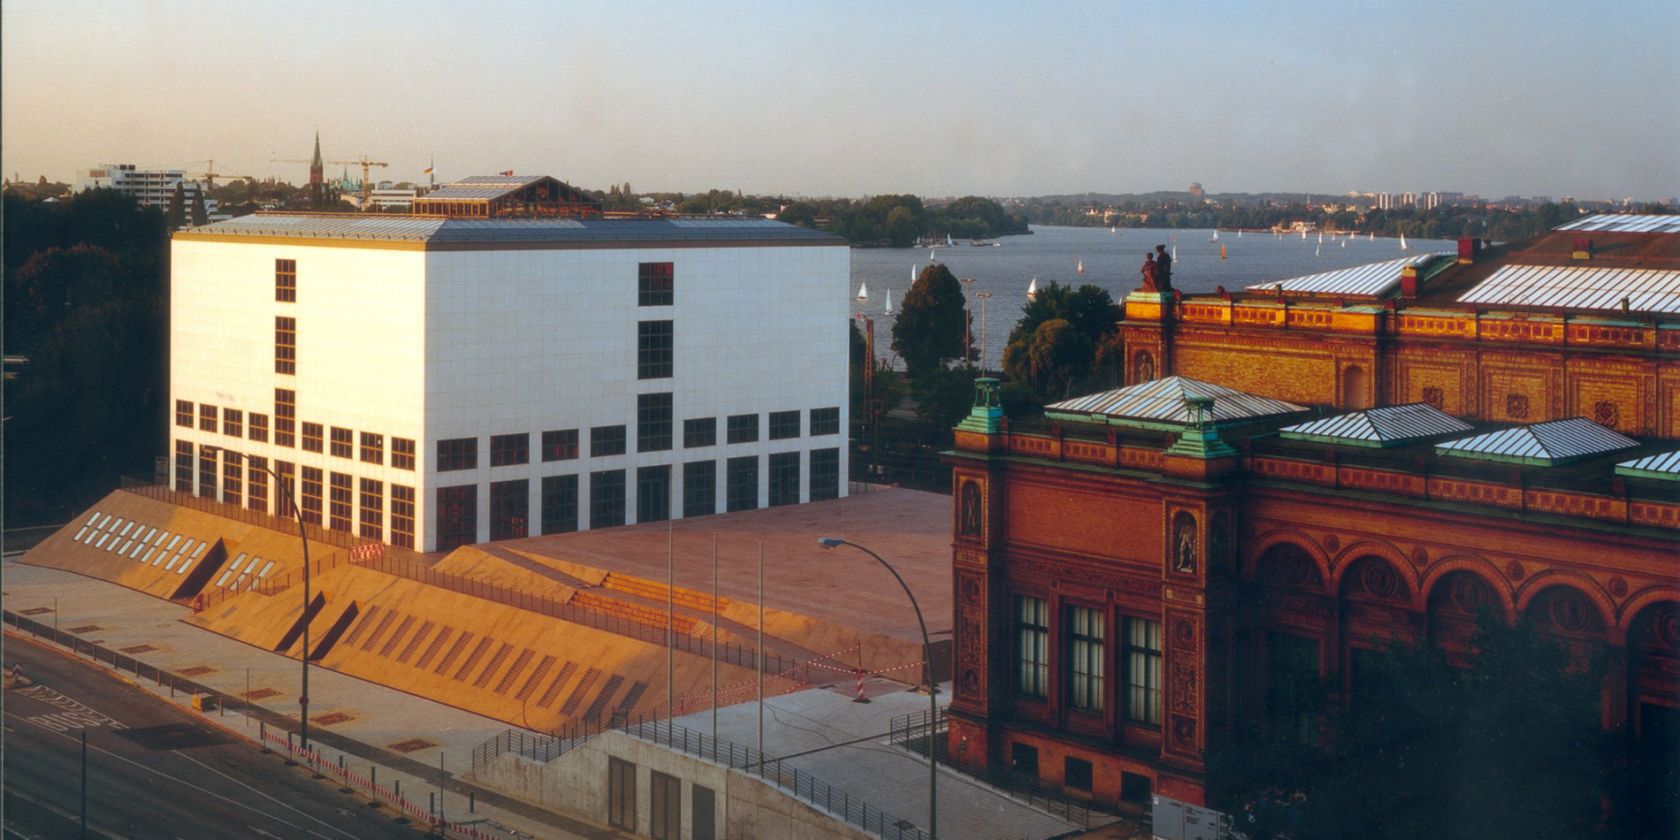 Blick auf Galerie der Gegenwart und Gründungsbau, © Hamburger Kunsthalle, Photo: Wolfgang Neeb